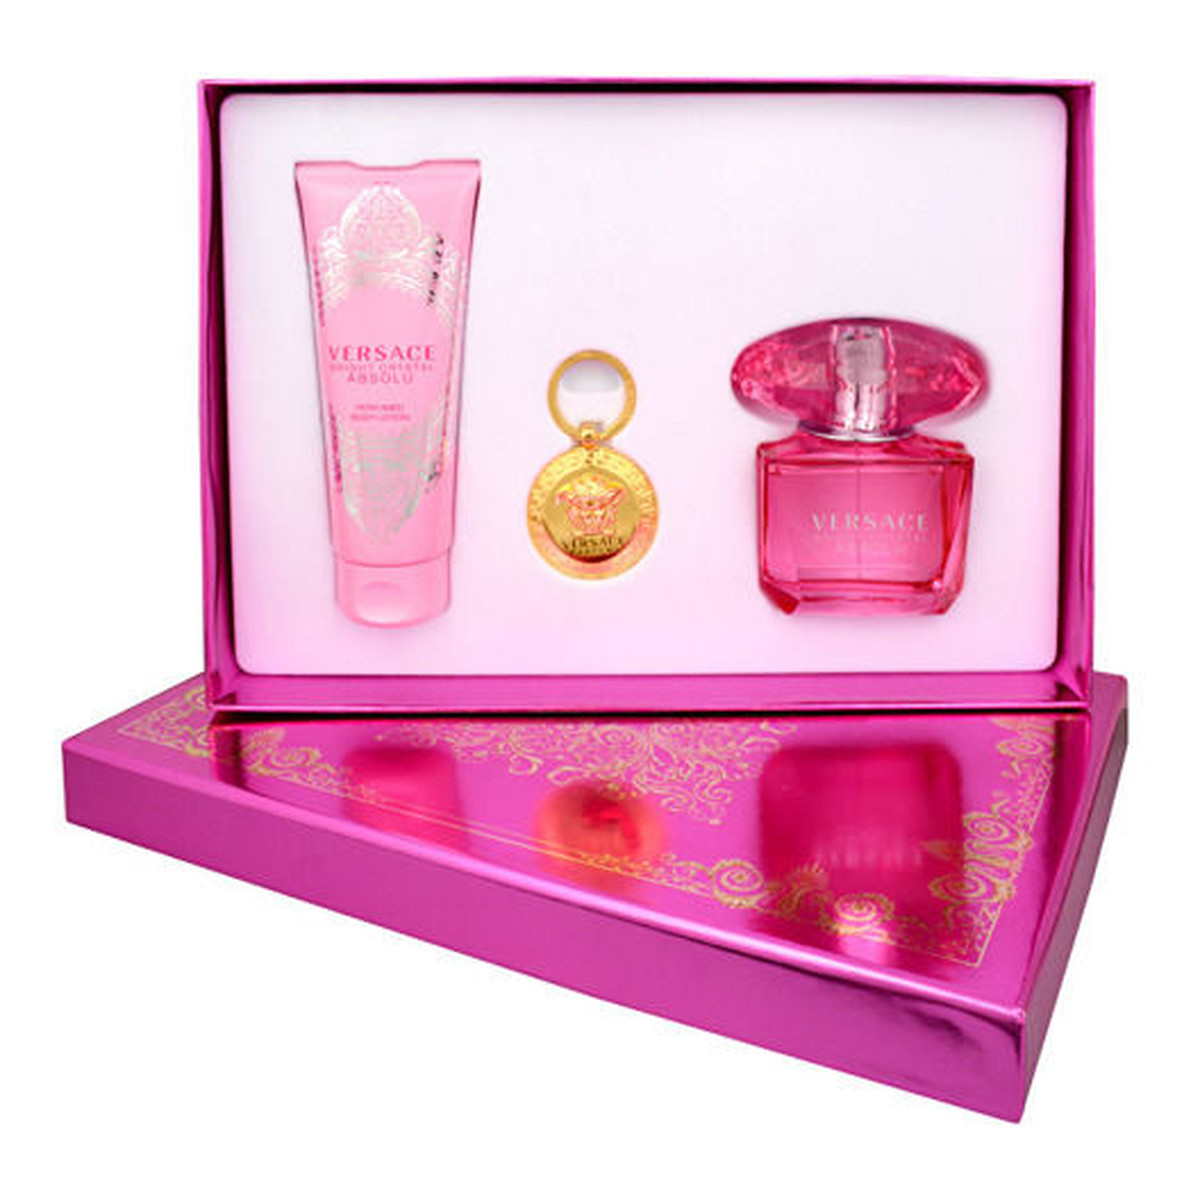 Versace Bright Crystal Absolu zestaw woda perfumowana 90ml + perfumowany balsam do ciała + breloczek 100ml